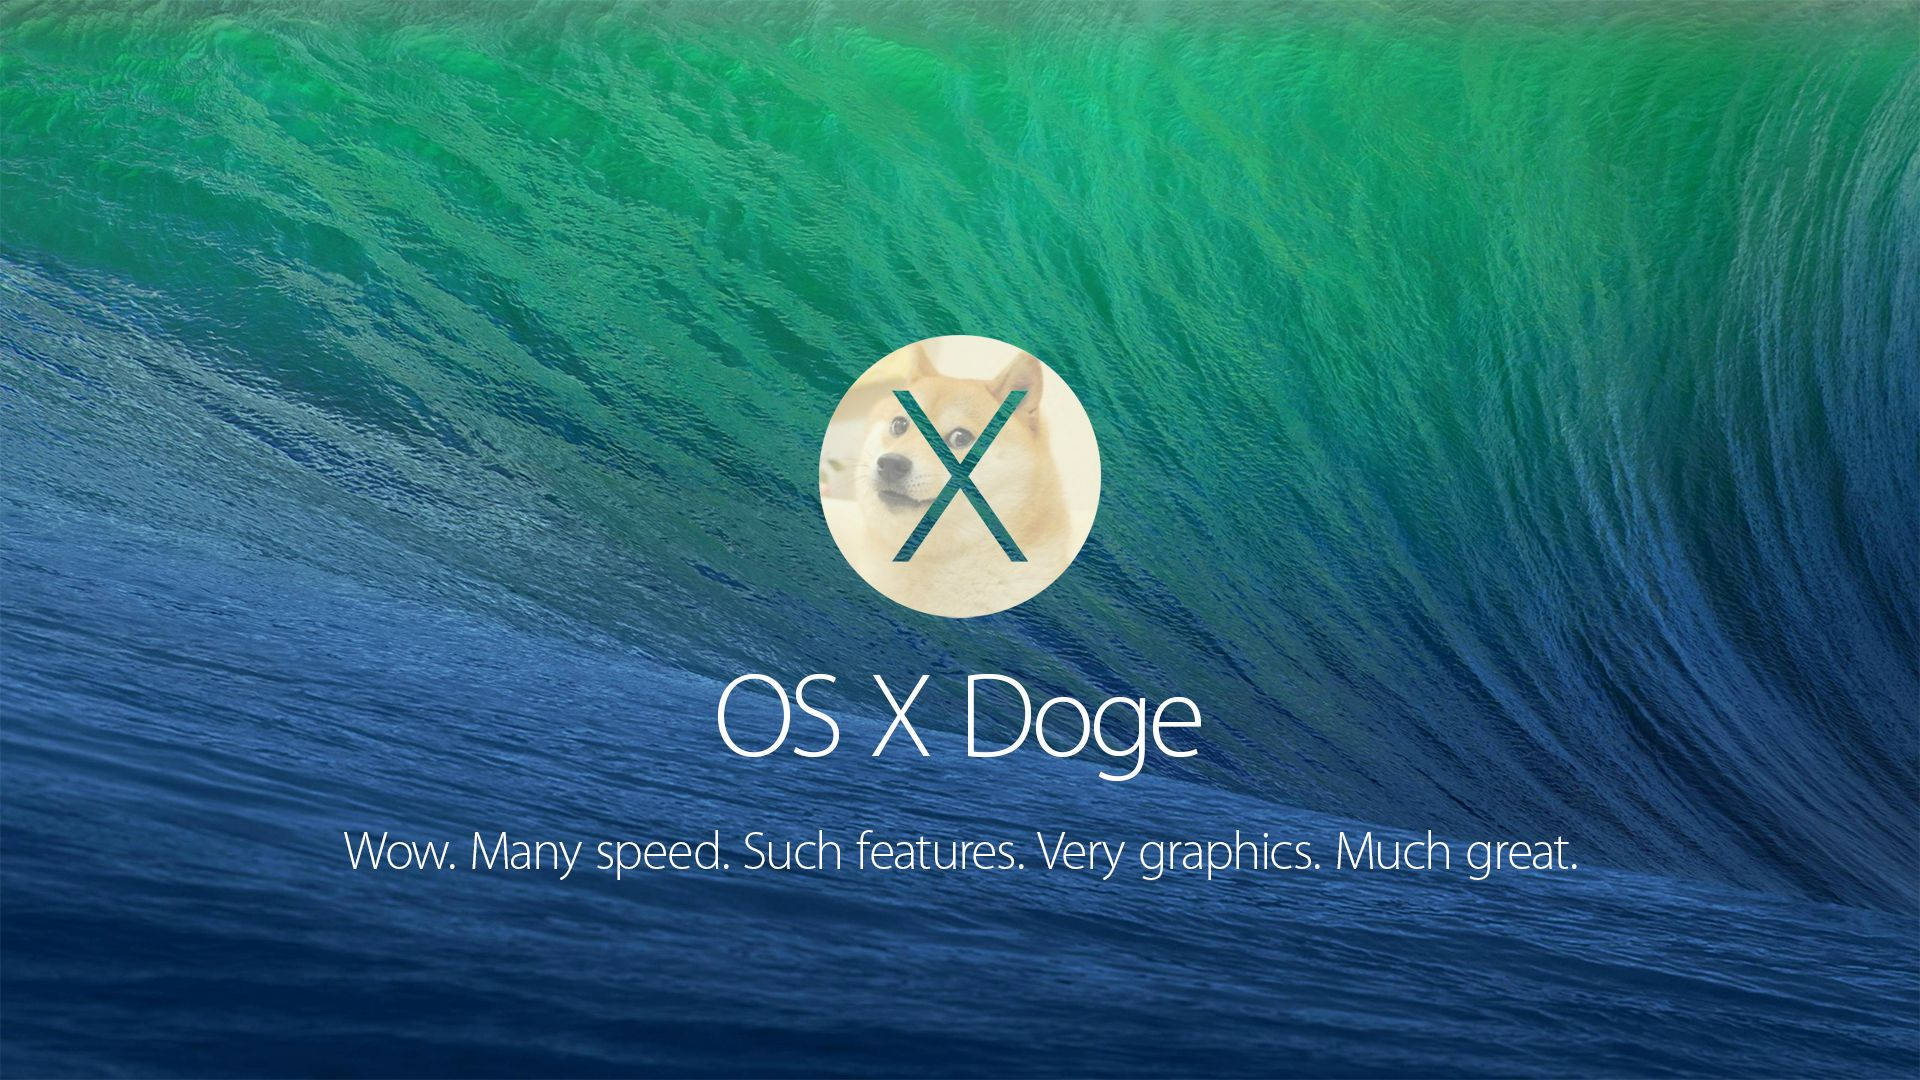 Mac OS X Doge meme wallpaper